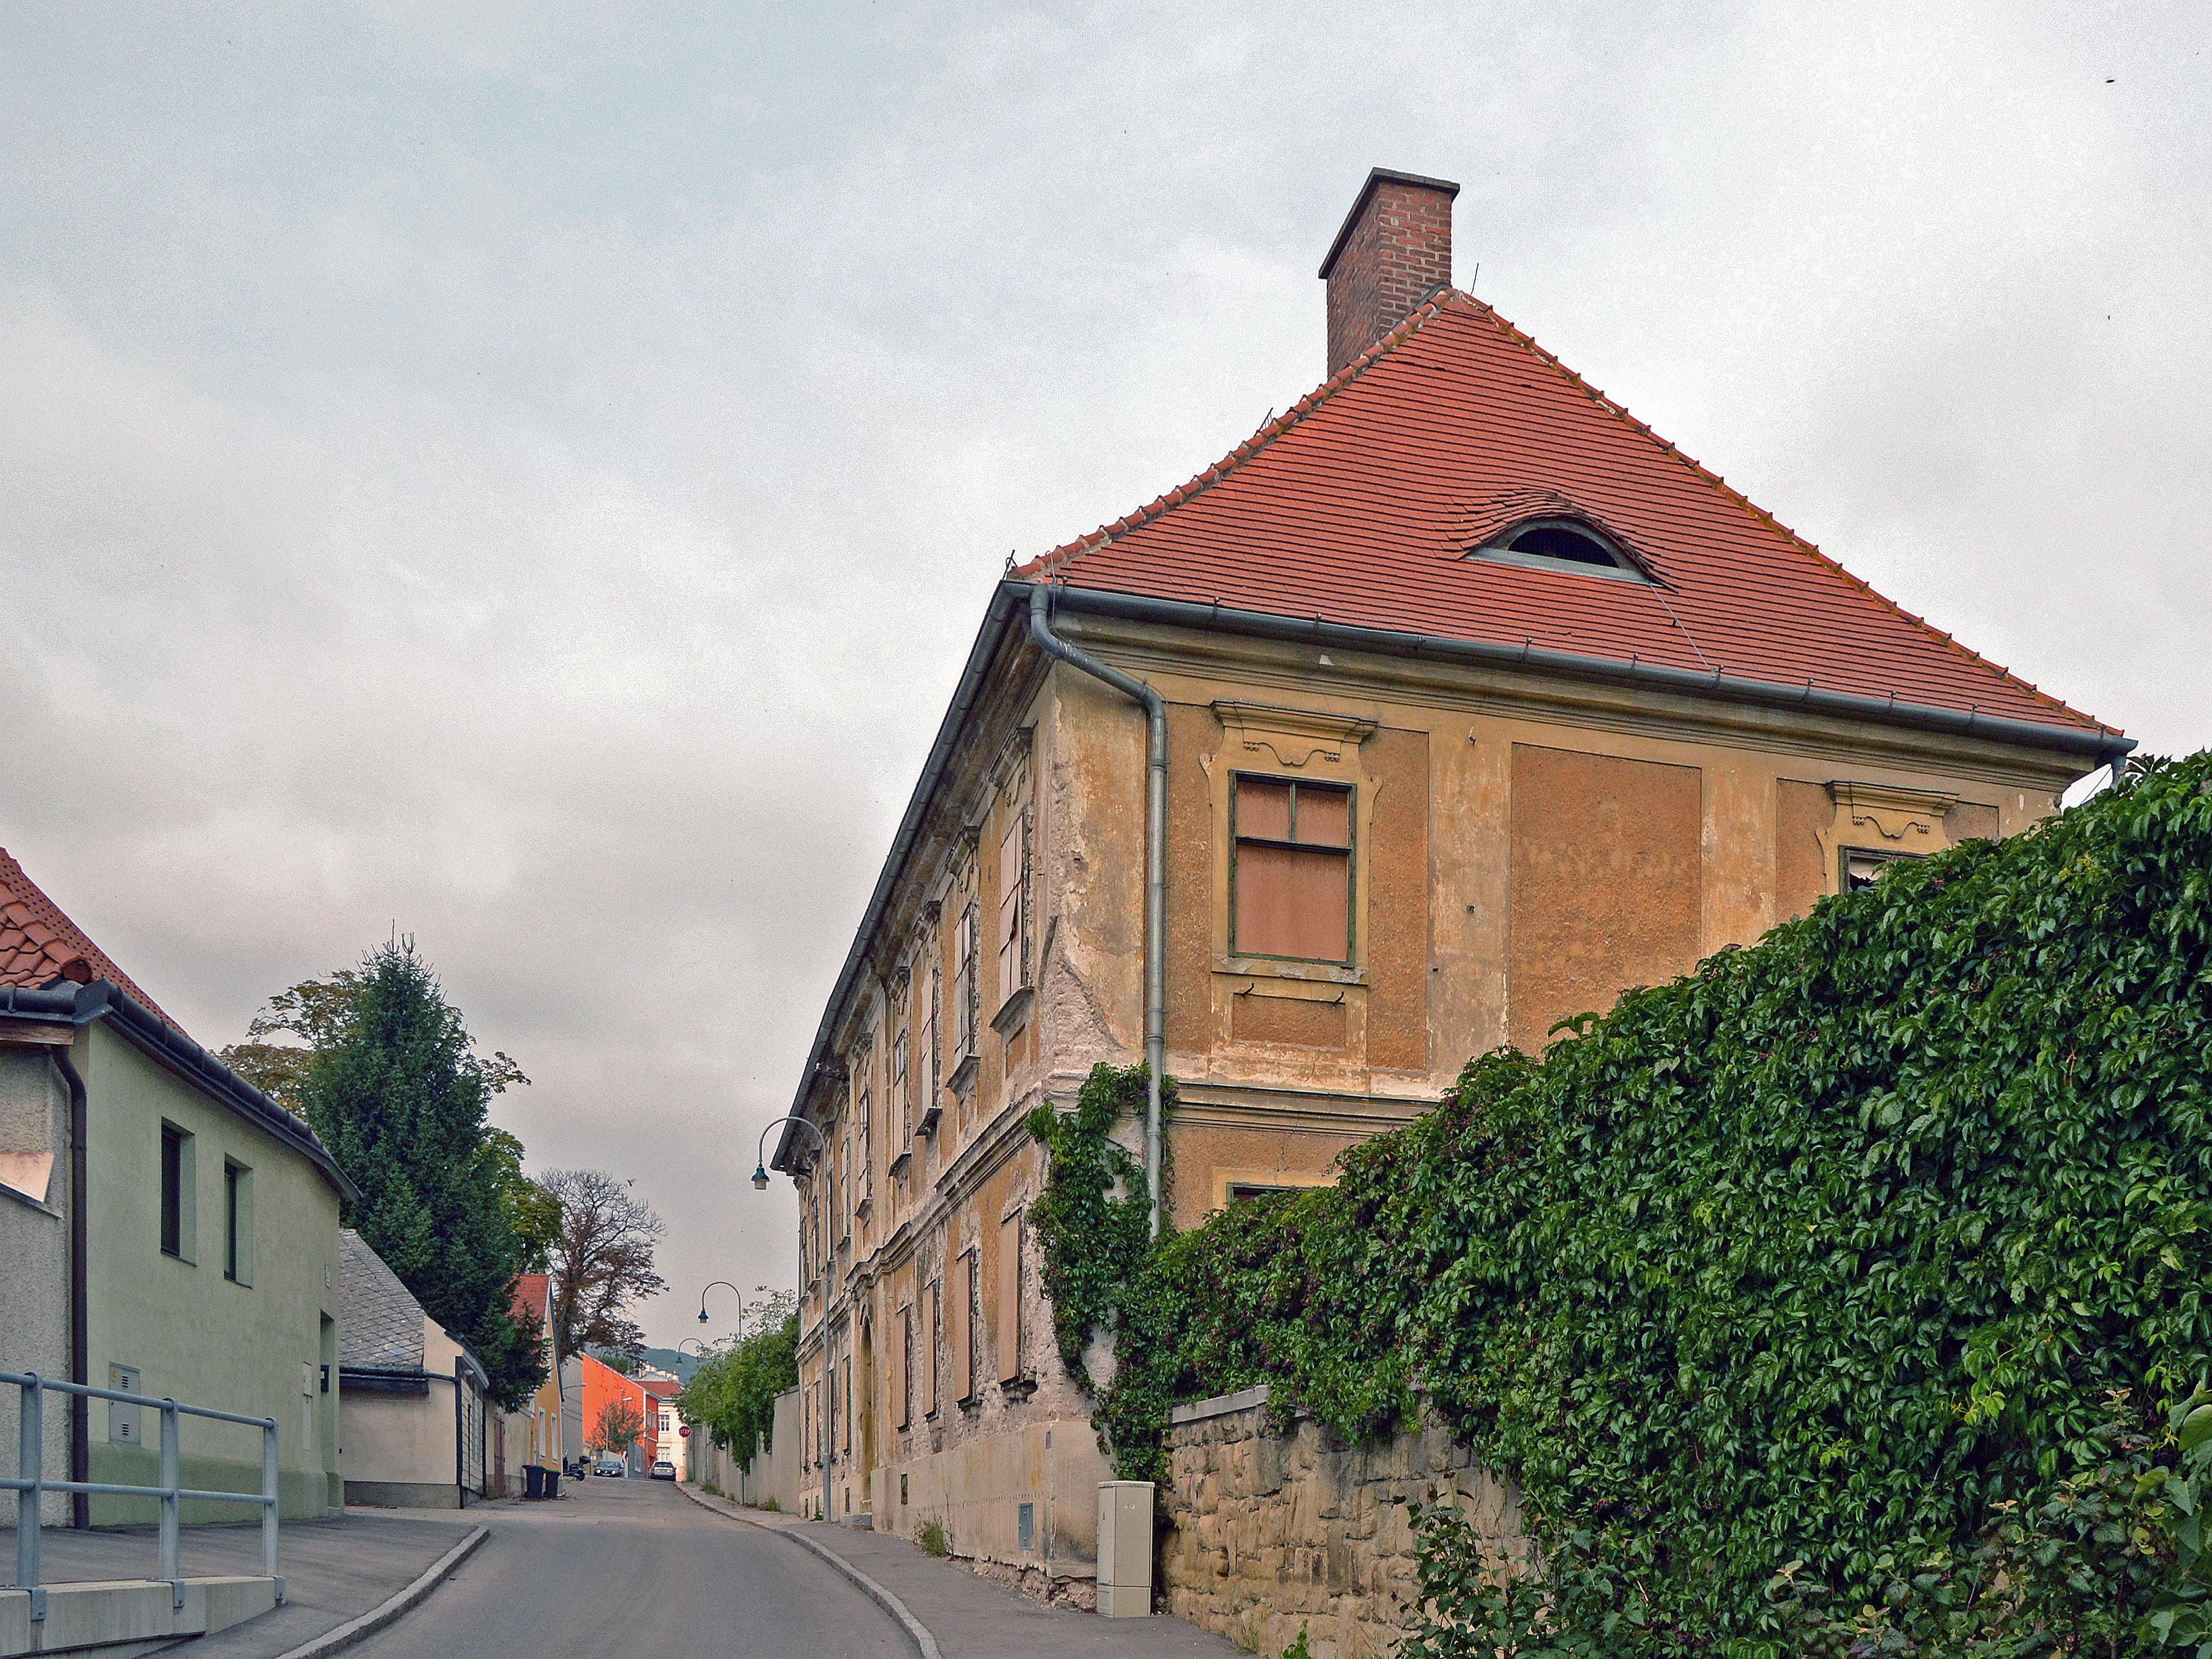  Klosterneuburg